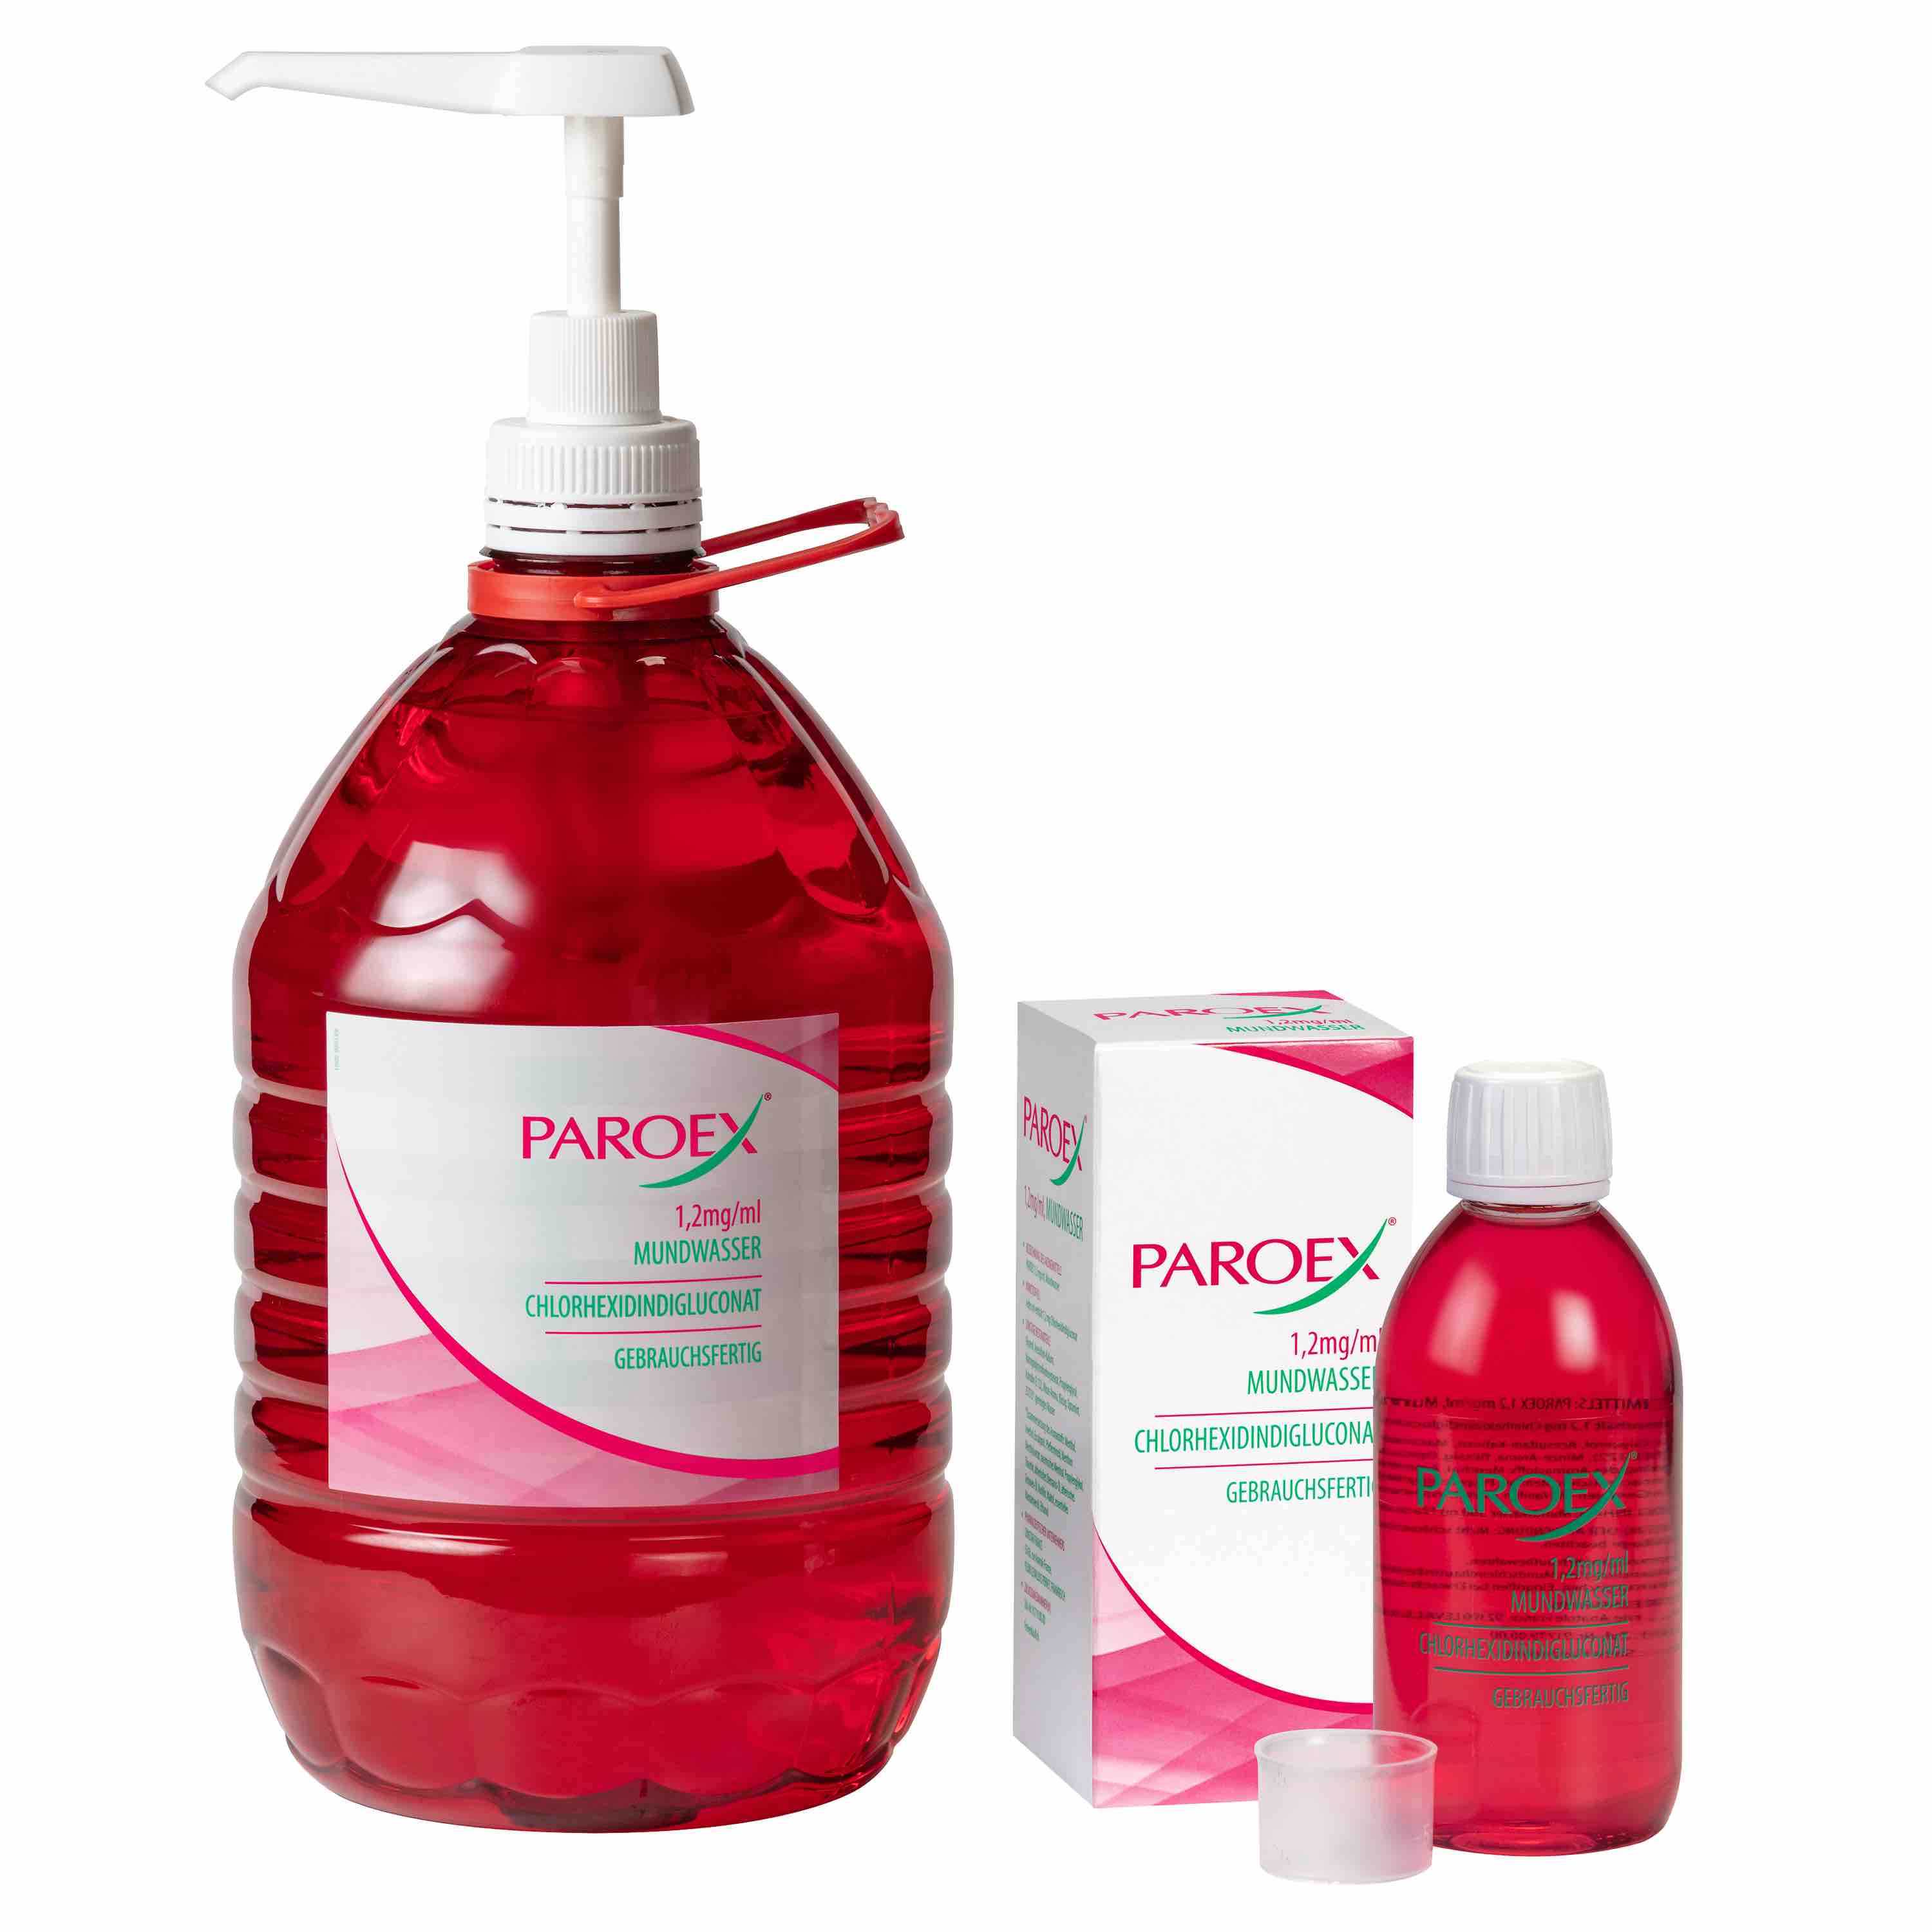 Paroex 1,2 mg/ml Mundwasser ist verfügbar in der 5-Liter- und 300- ml-Flasche